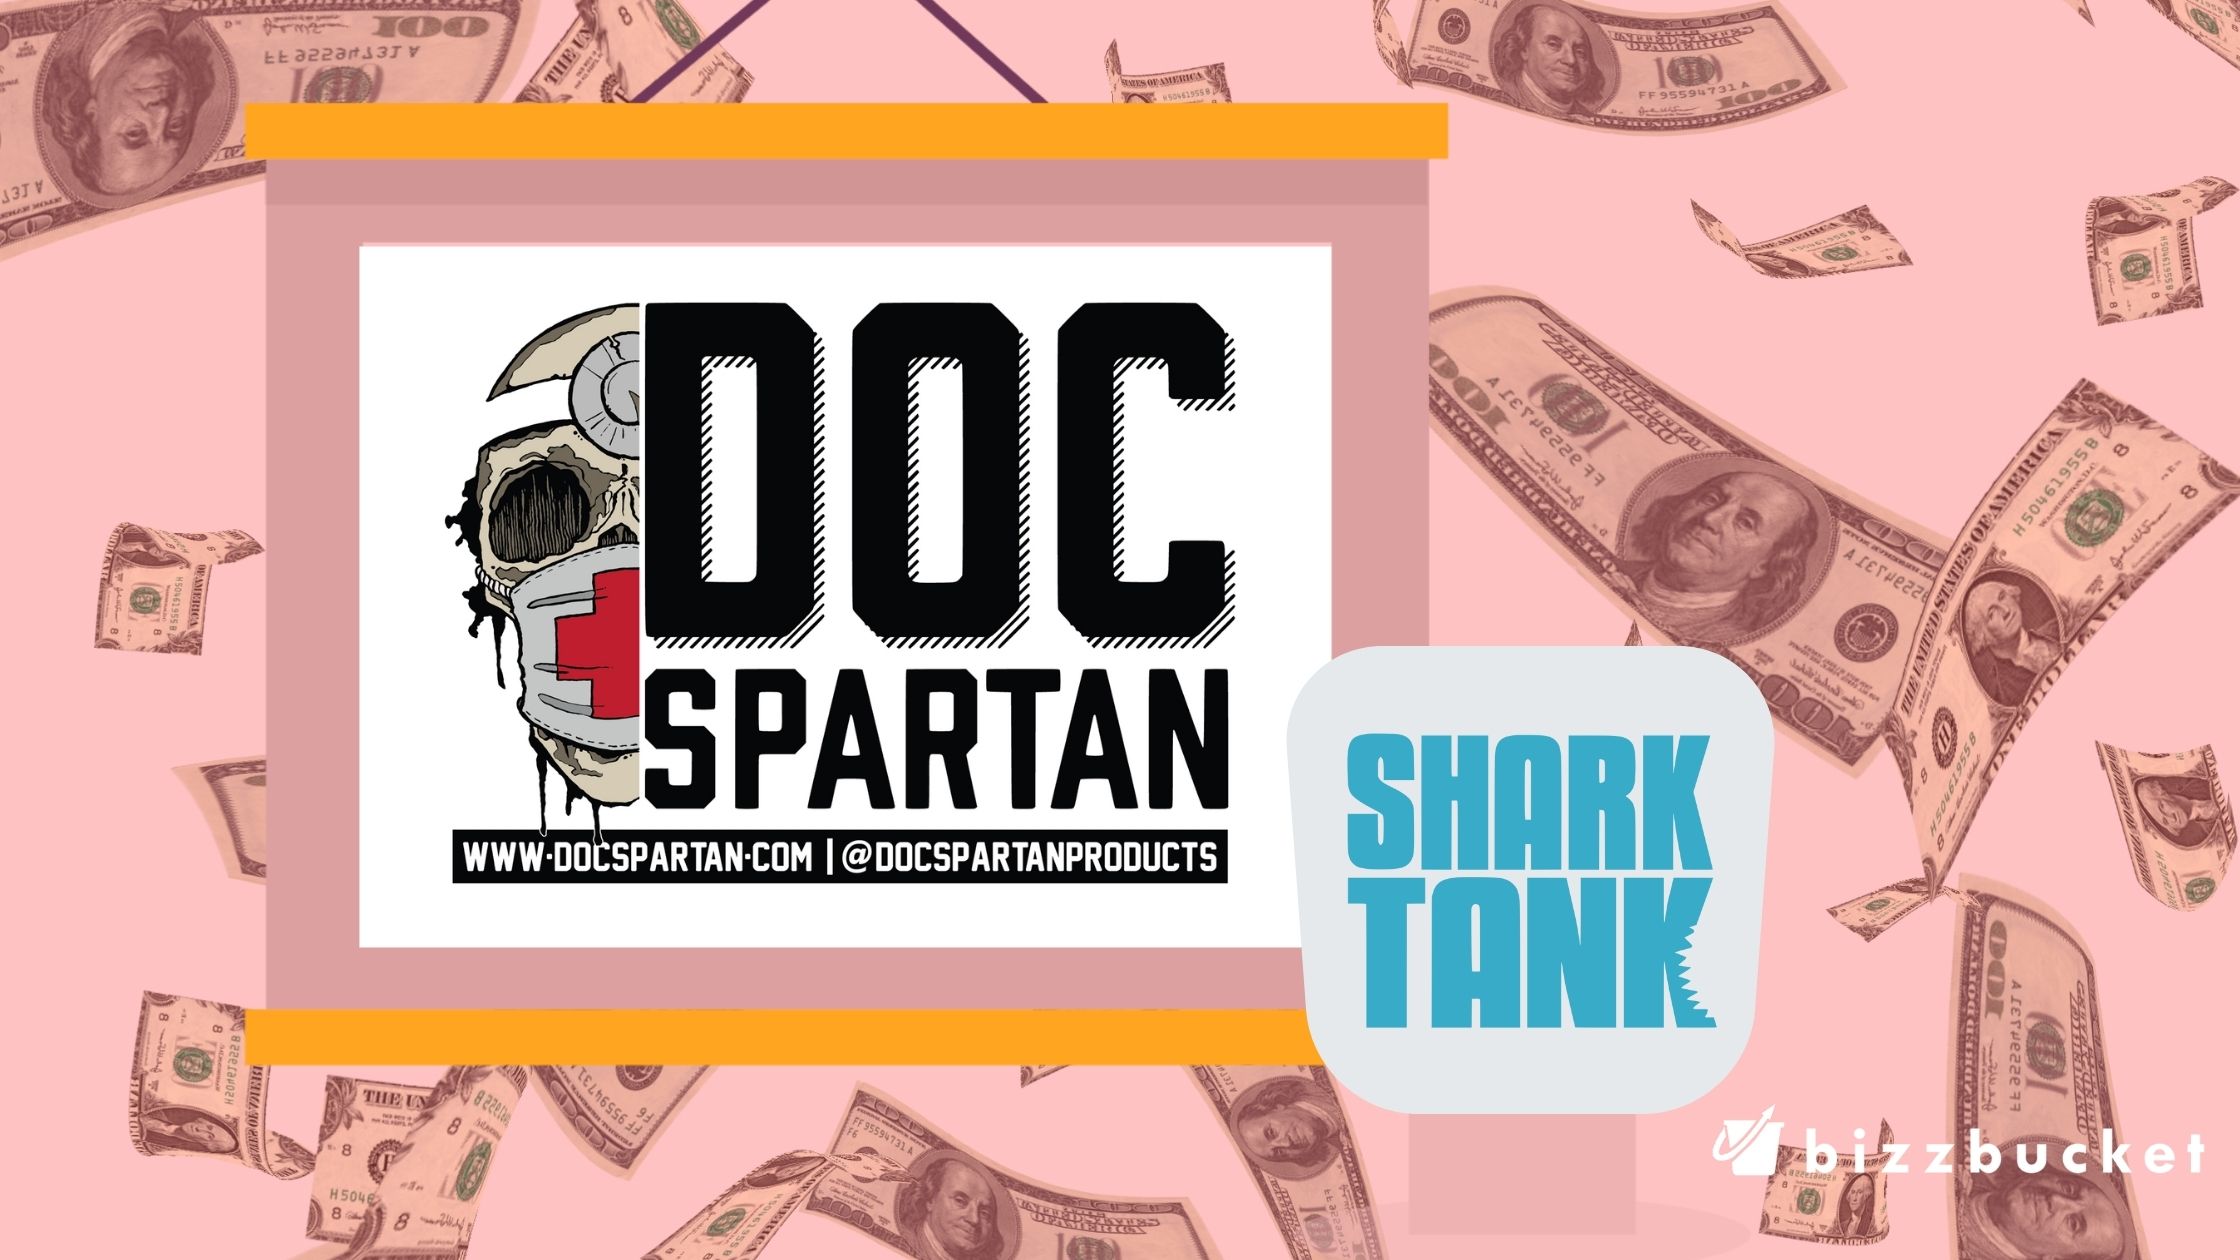 Doc Spartan shark tank update